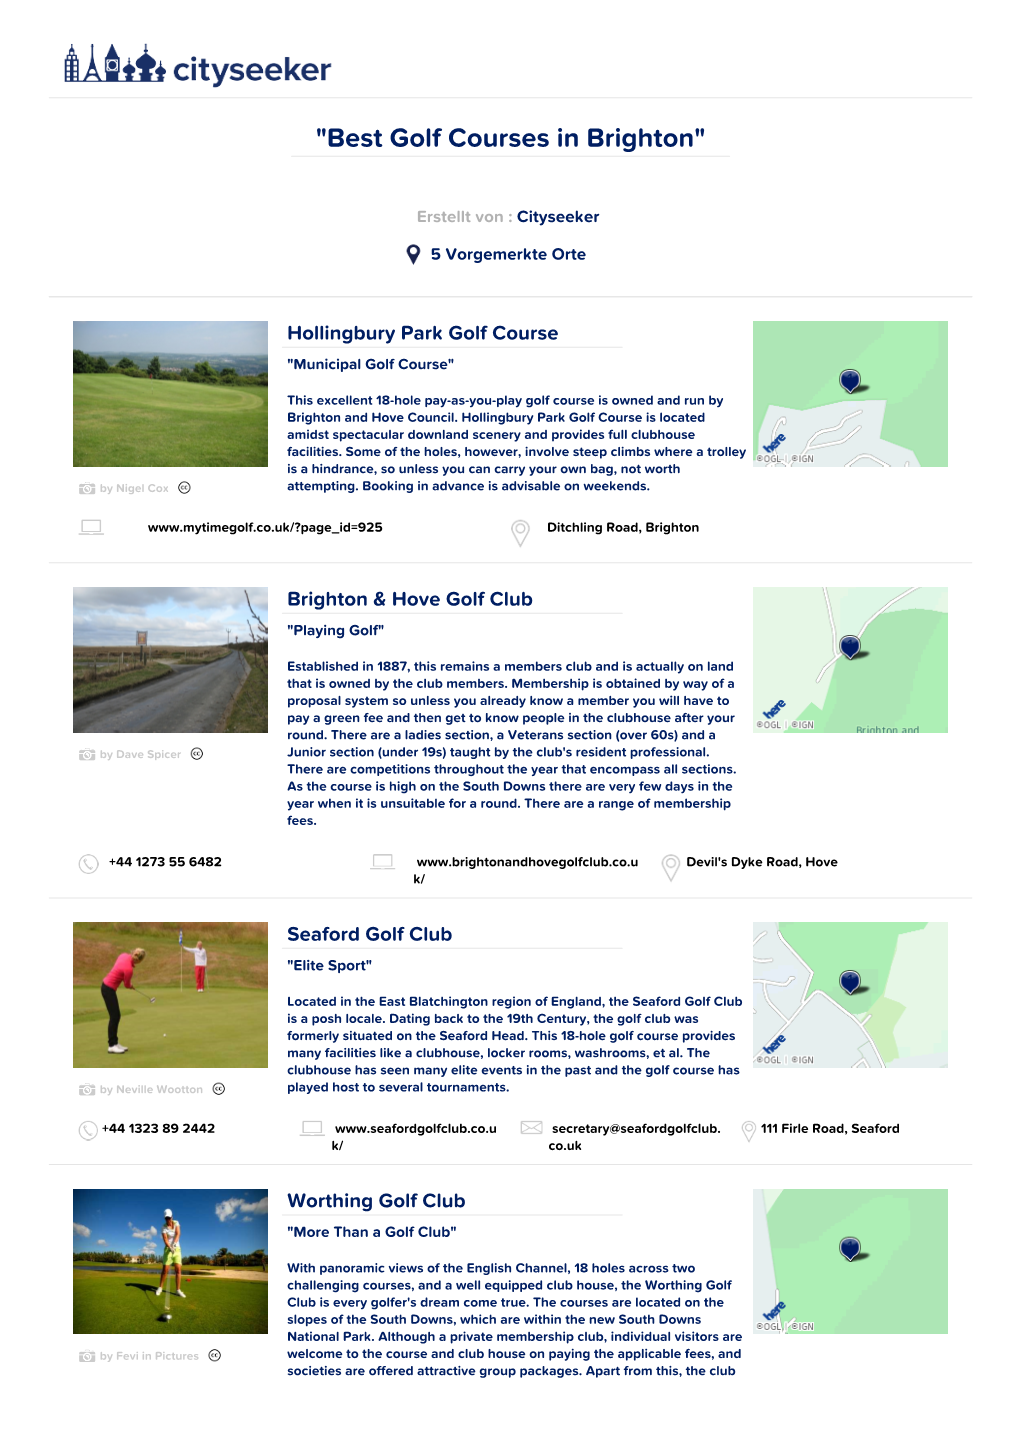 Best Golf Courses in Brighton"